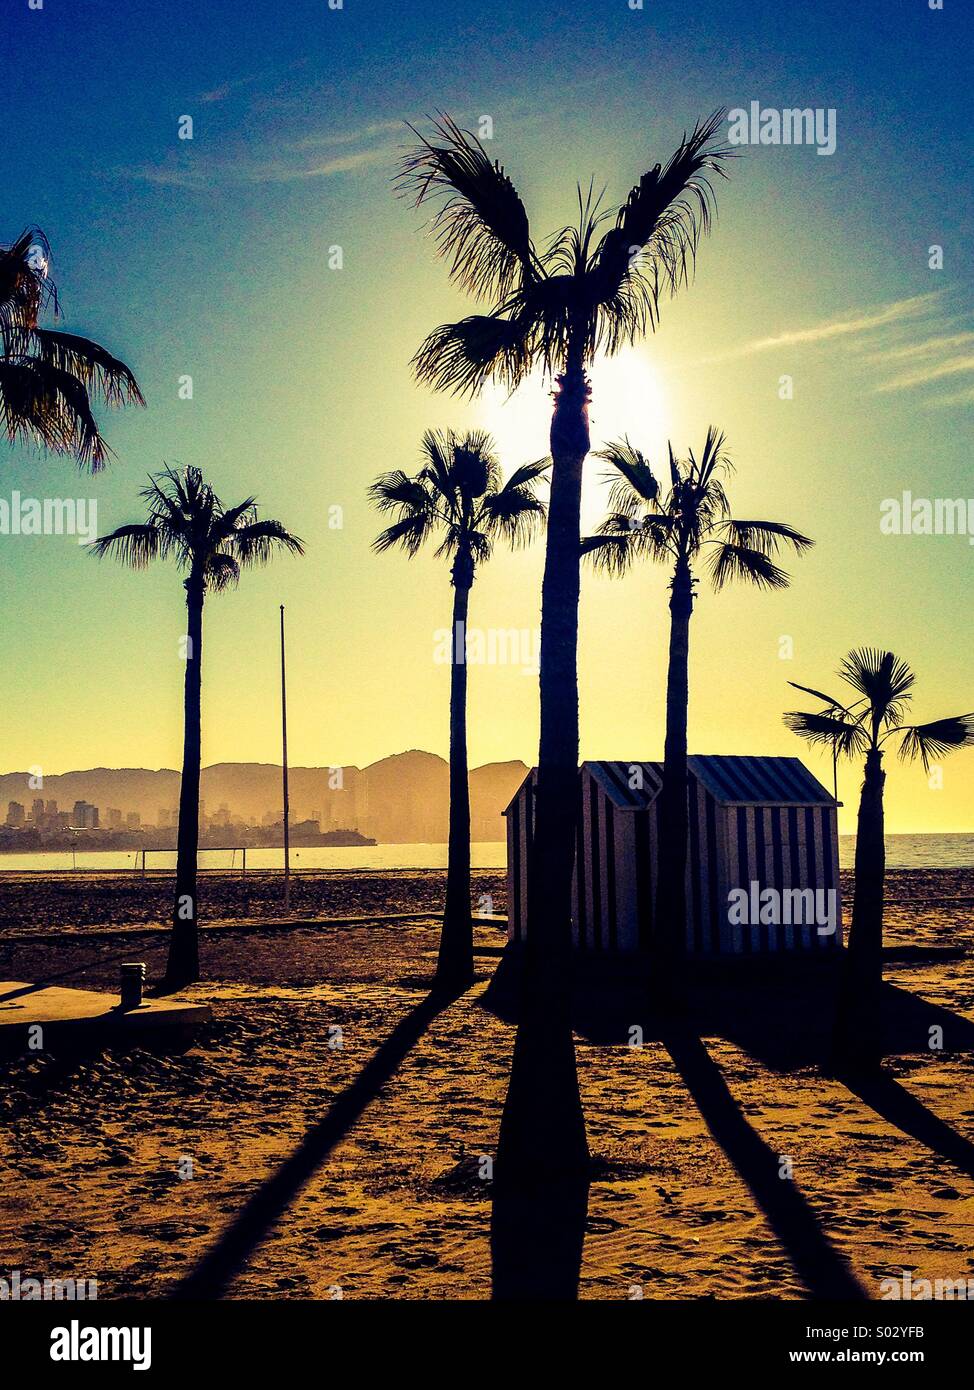 Palmiers et cabines de plage à rayures sur la plage au lever du soleil Banque D'Images